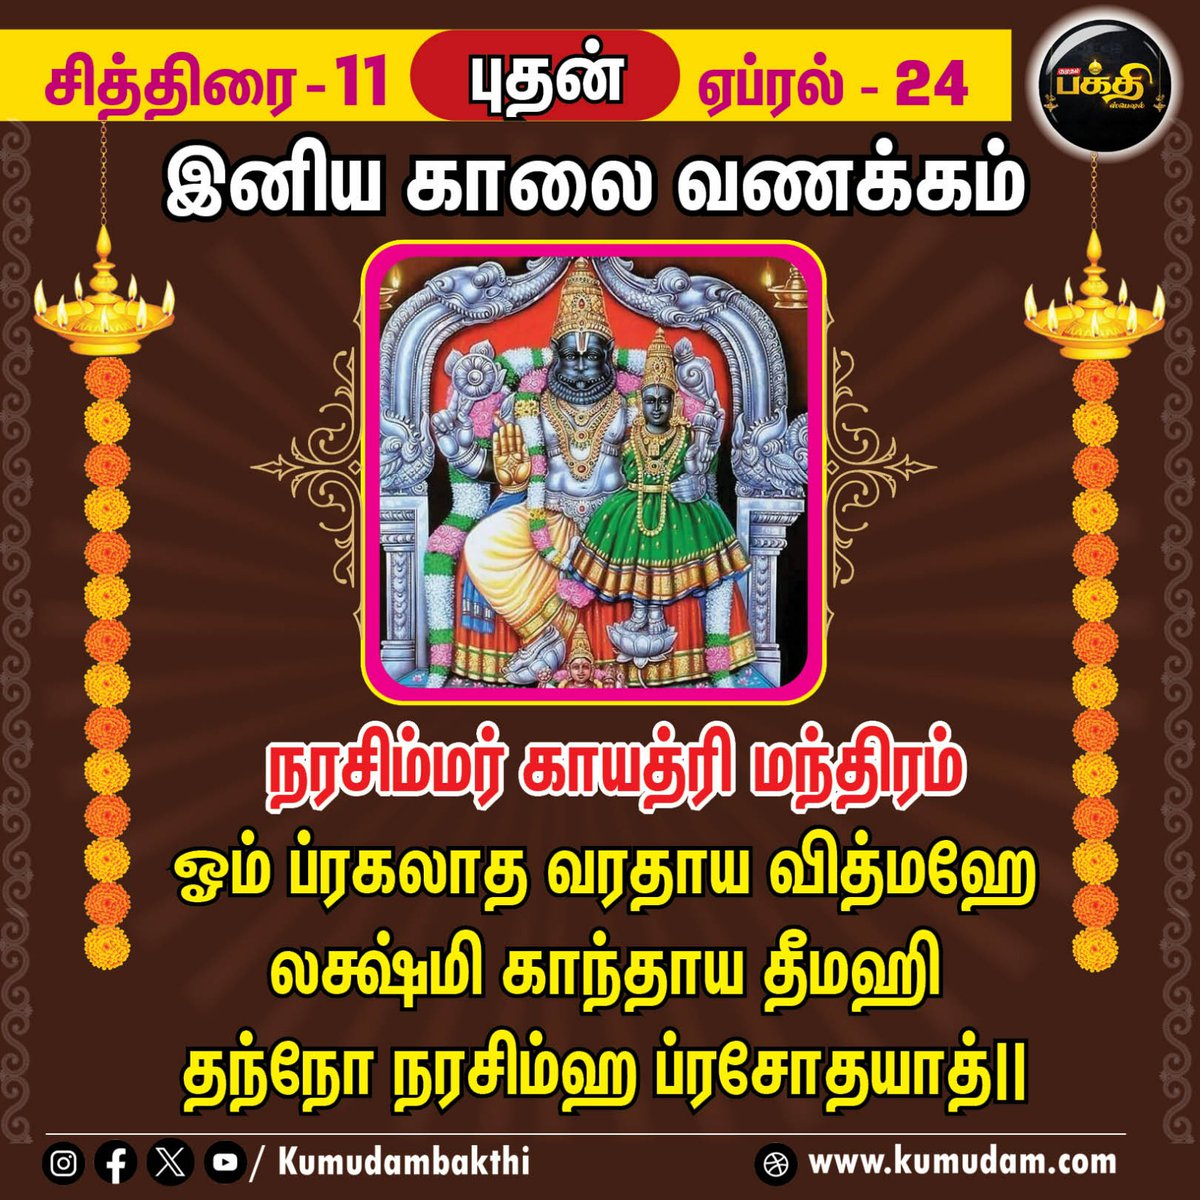 நரசிம்மர் காயத்ரி மந்திரம் | சித்திரை - 11 | ஏப்ரல் - 24 | Kumudam Bakthi    
#gayathrimanthram | #narasimhar | #chithirai | #devotional | #kumudambakthi